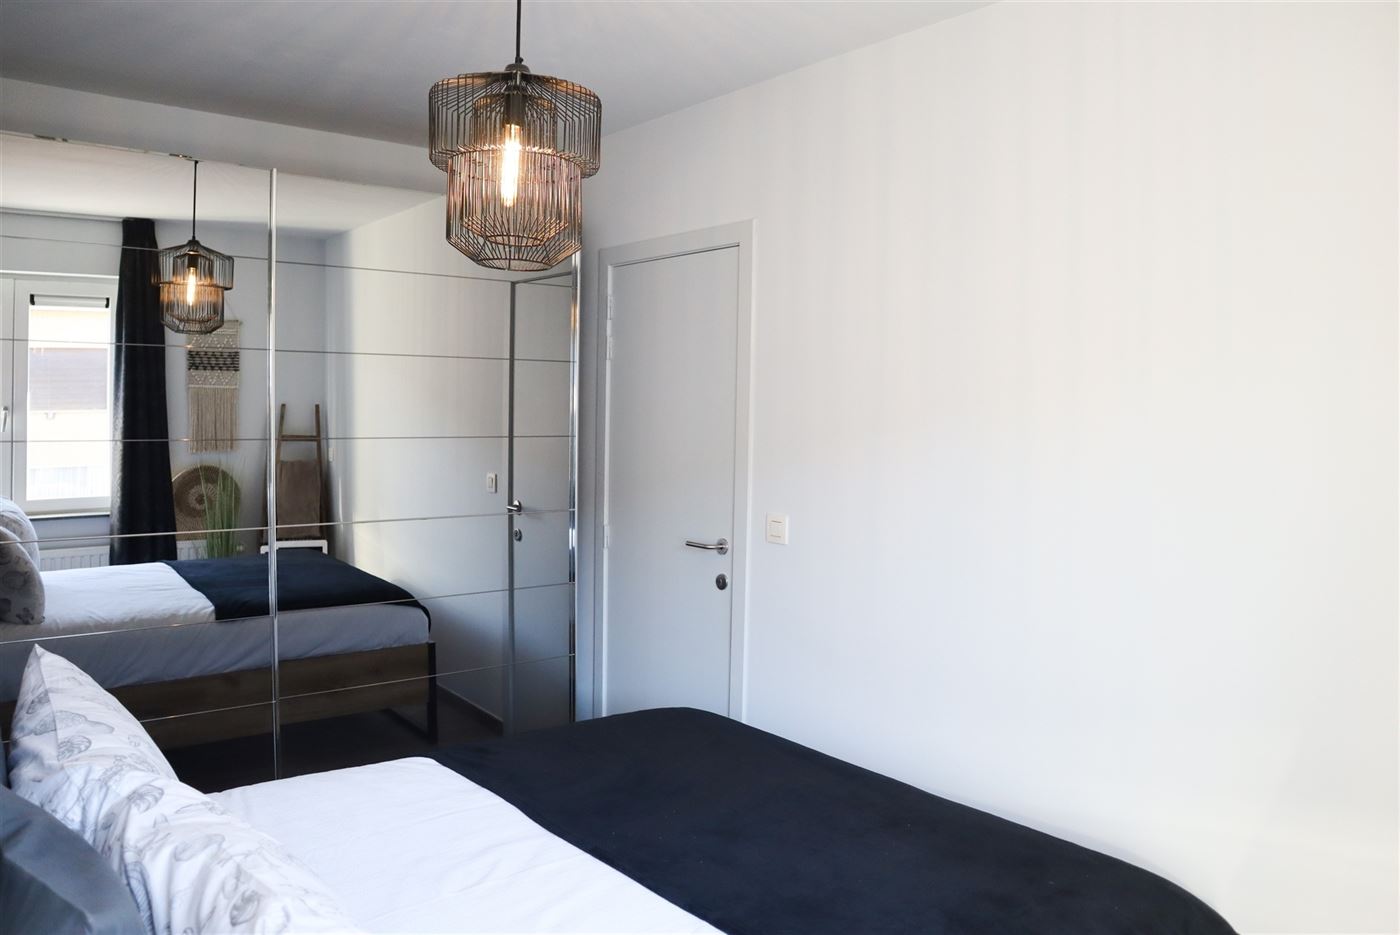 Res. Astrid 30-0102 - Recent gezellig appartement met slaapkamer - Gelegen op de eerste verdieping in de Astridlaan - Inkom met vestiaire - Badkamer m...